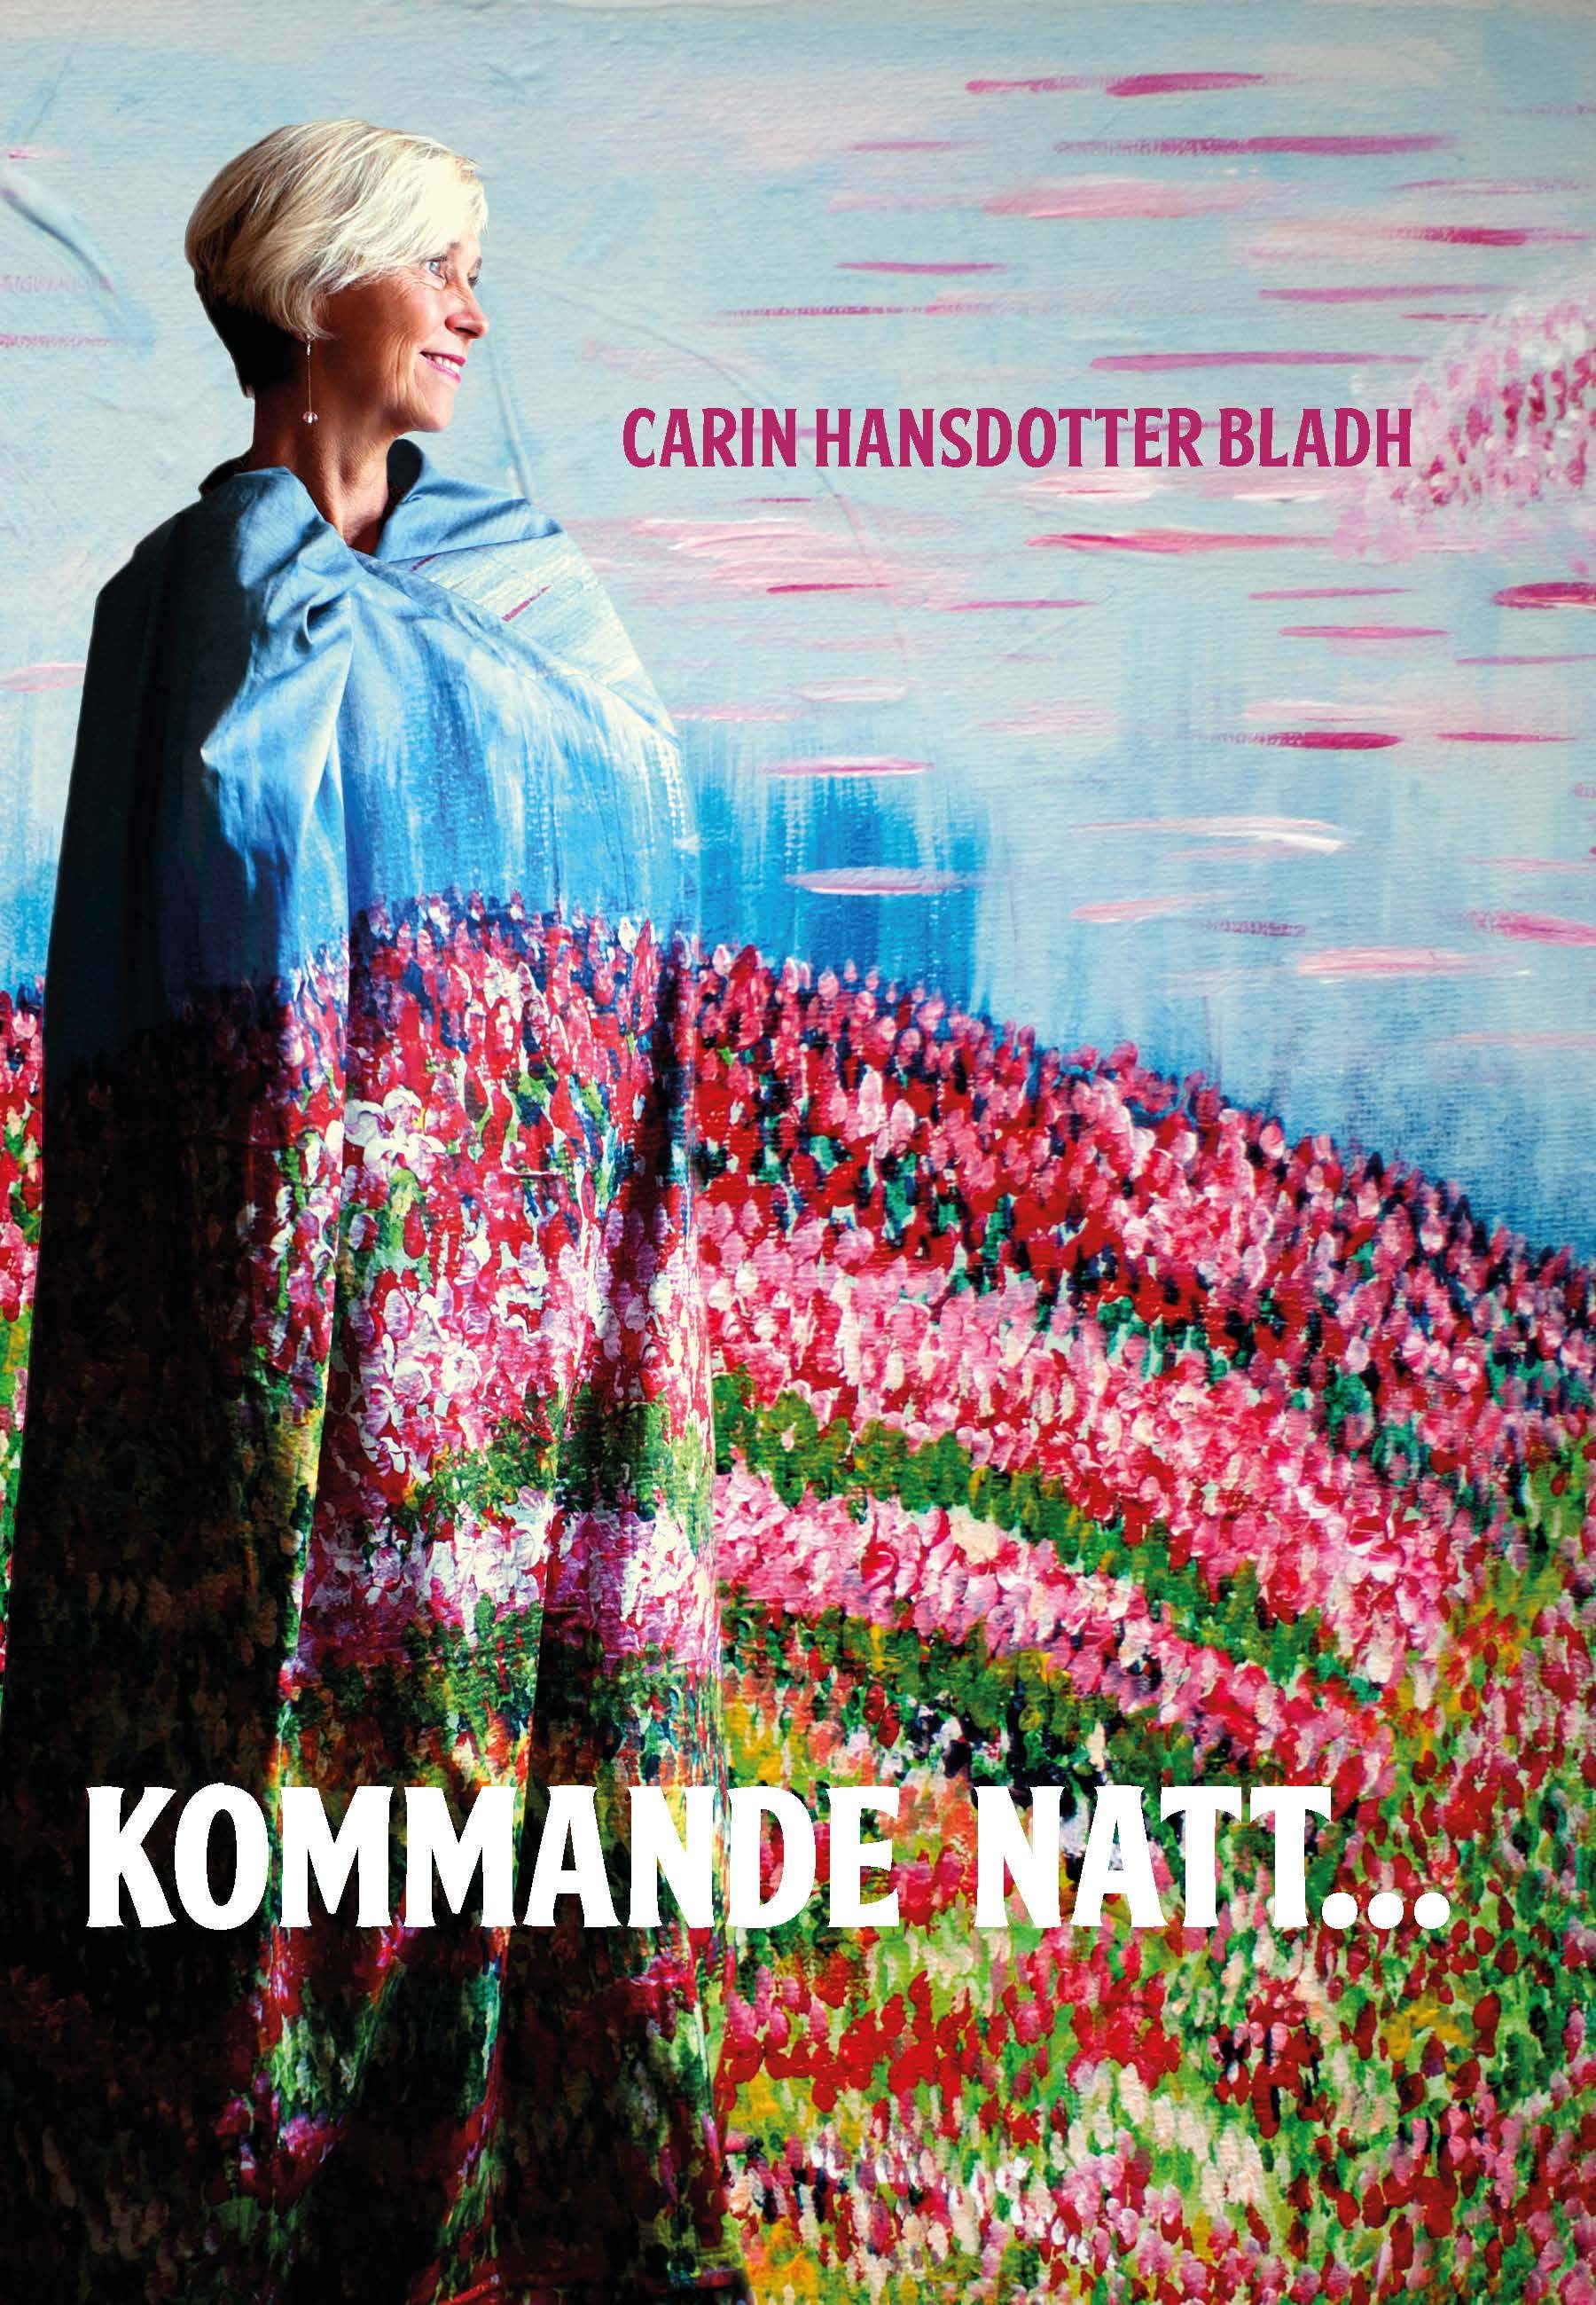 Kommande natt..., eBook by Carin Hansdotter Bladh